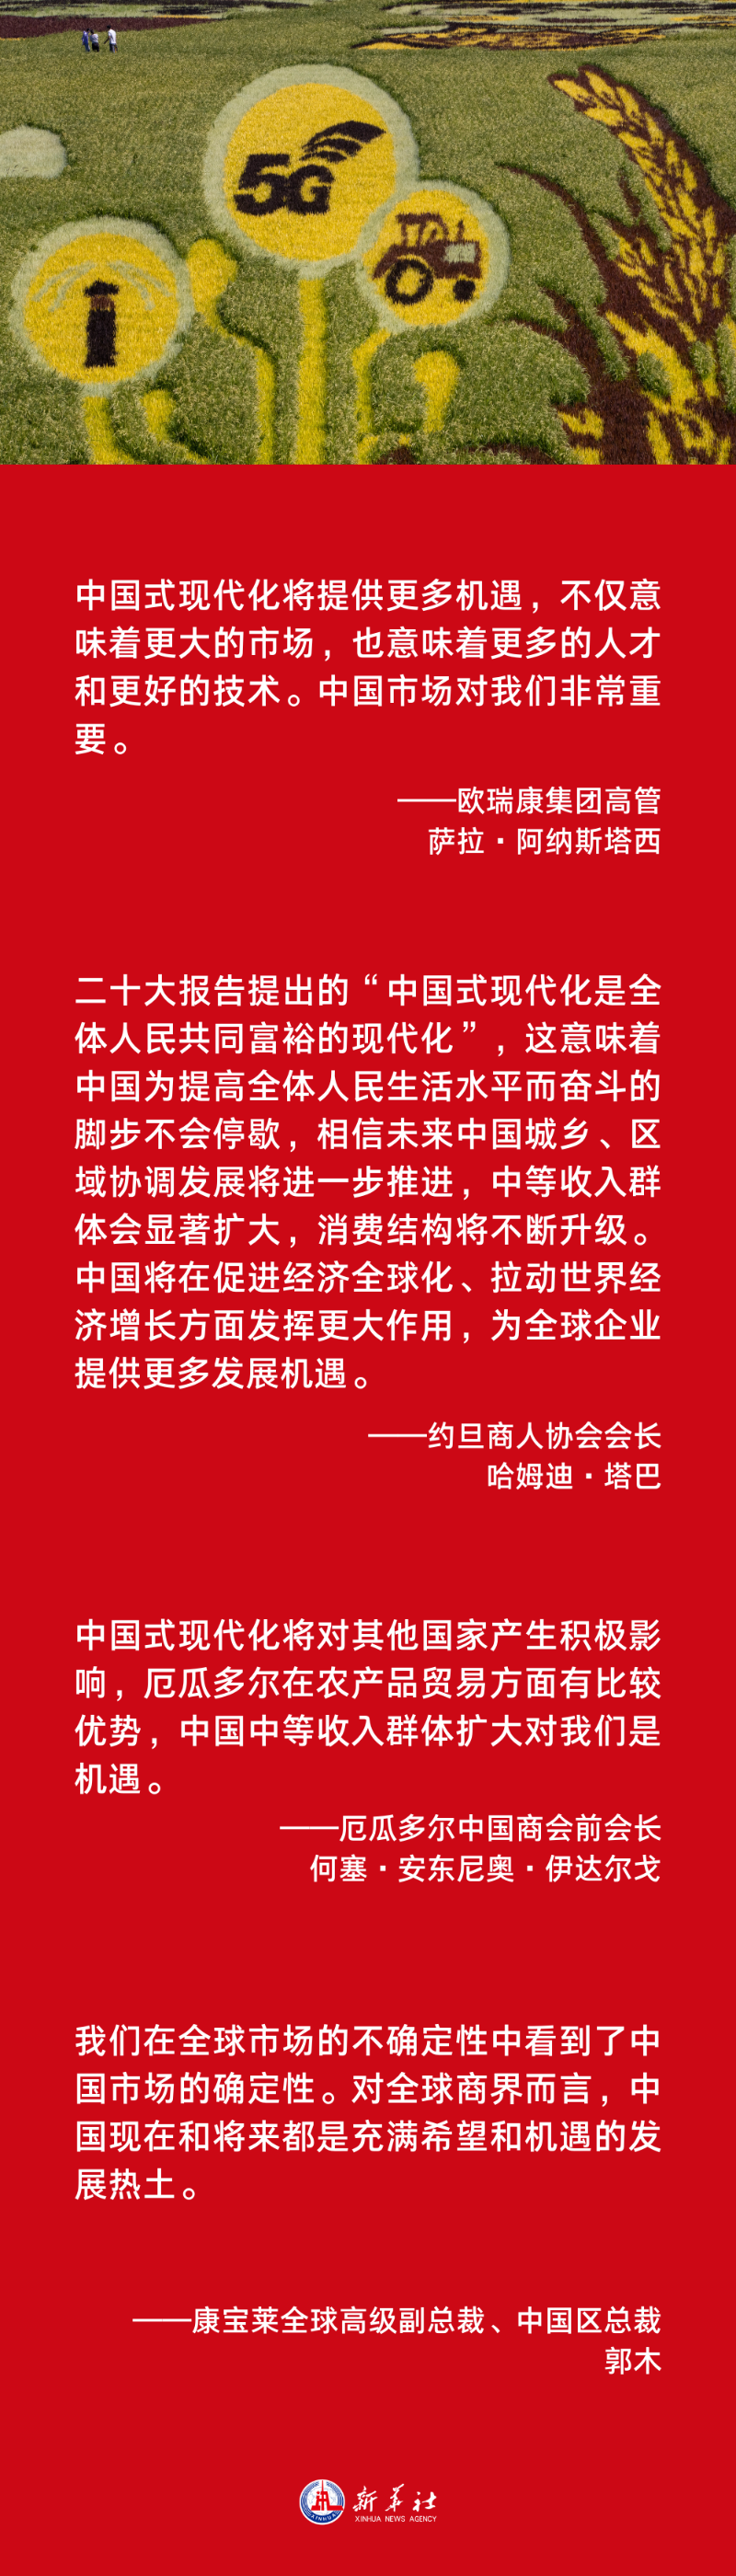 海报 | 中国式现代化是世界机遇